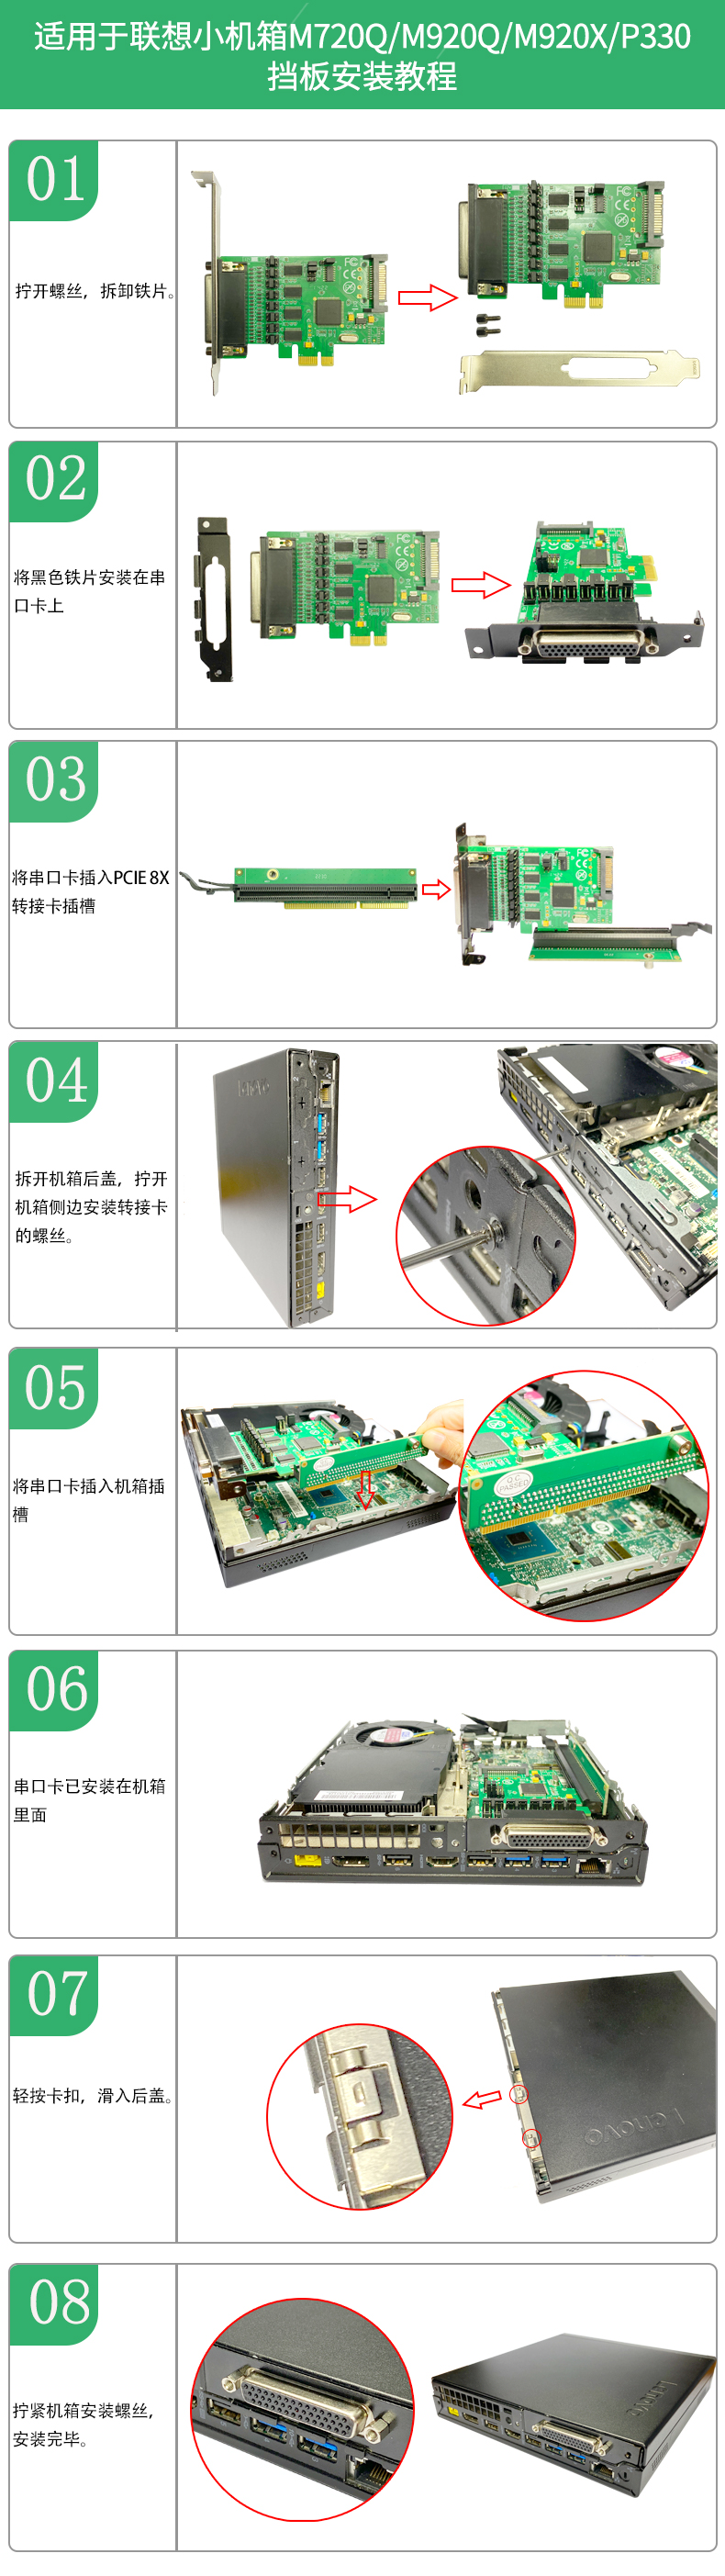 IO-PCE384T-PR4S短铁片安装教程详情图中文.jpg